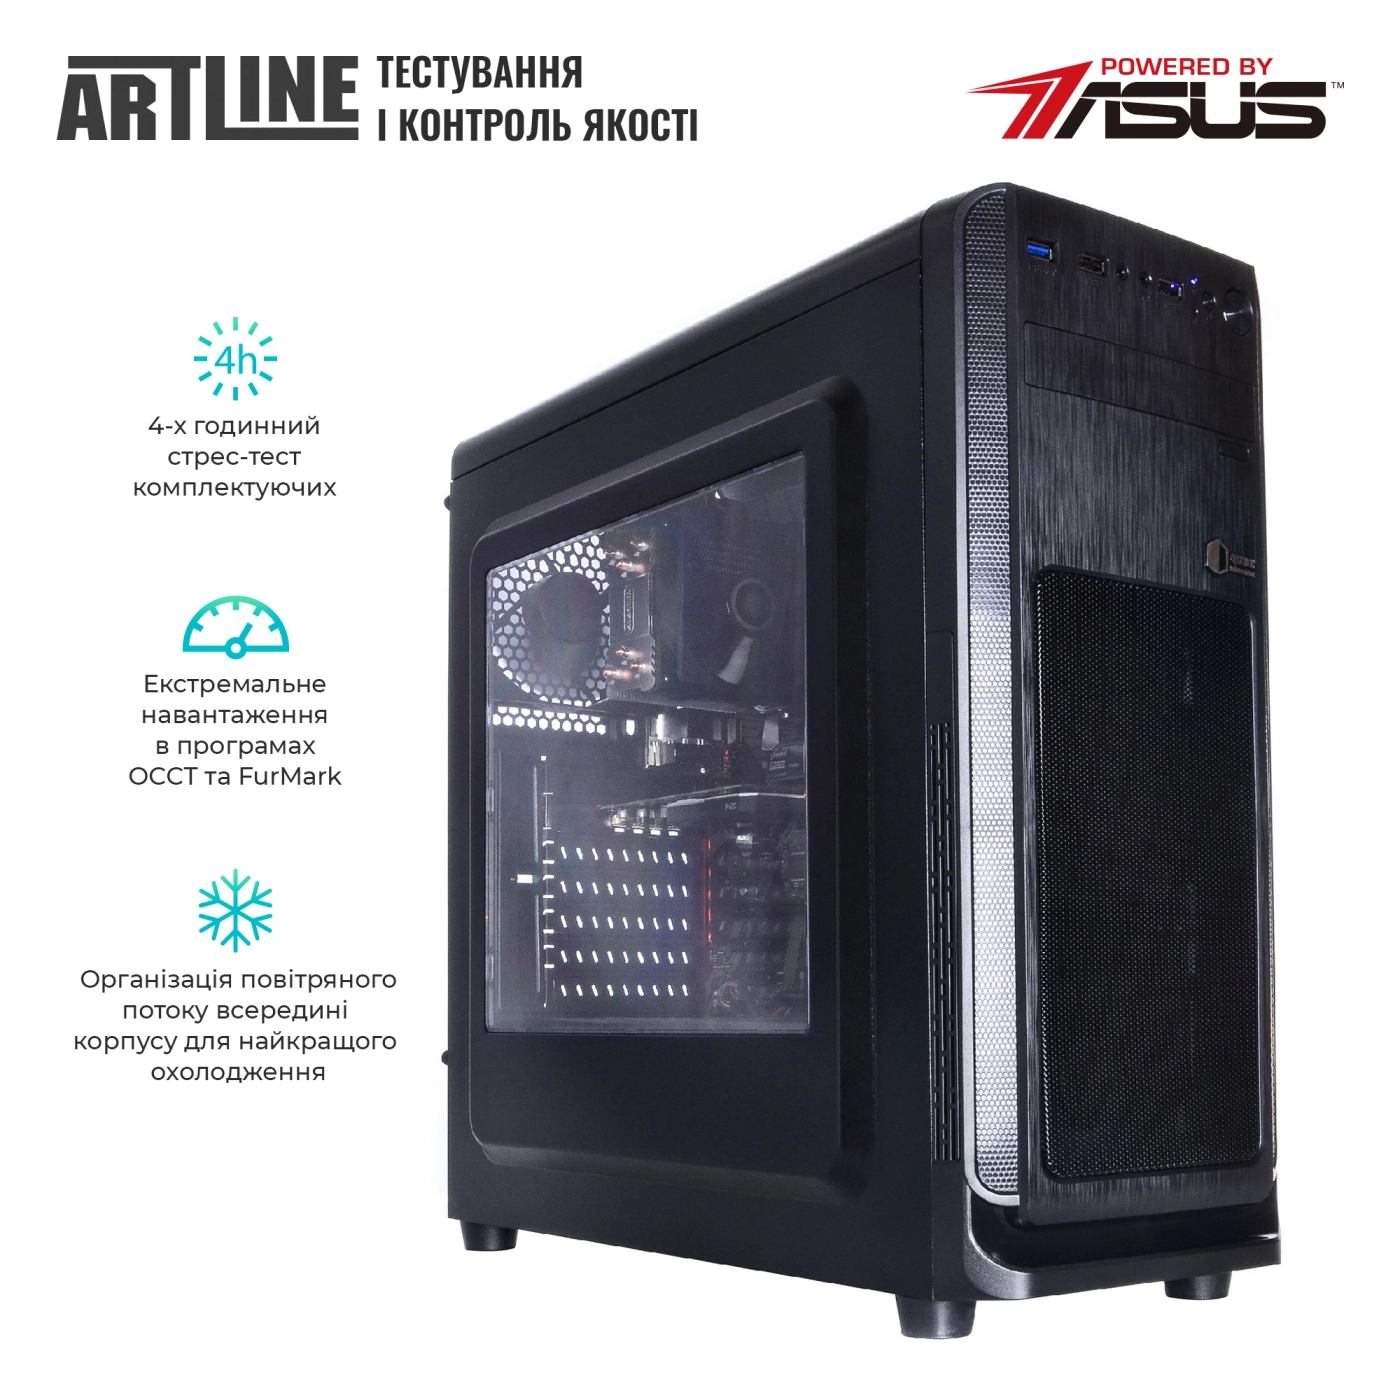 Купить Сервер ARTLINE Business T65v07 - фото 6